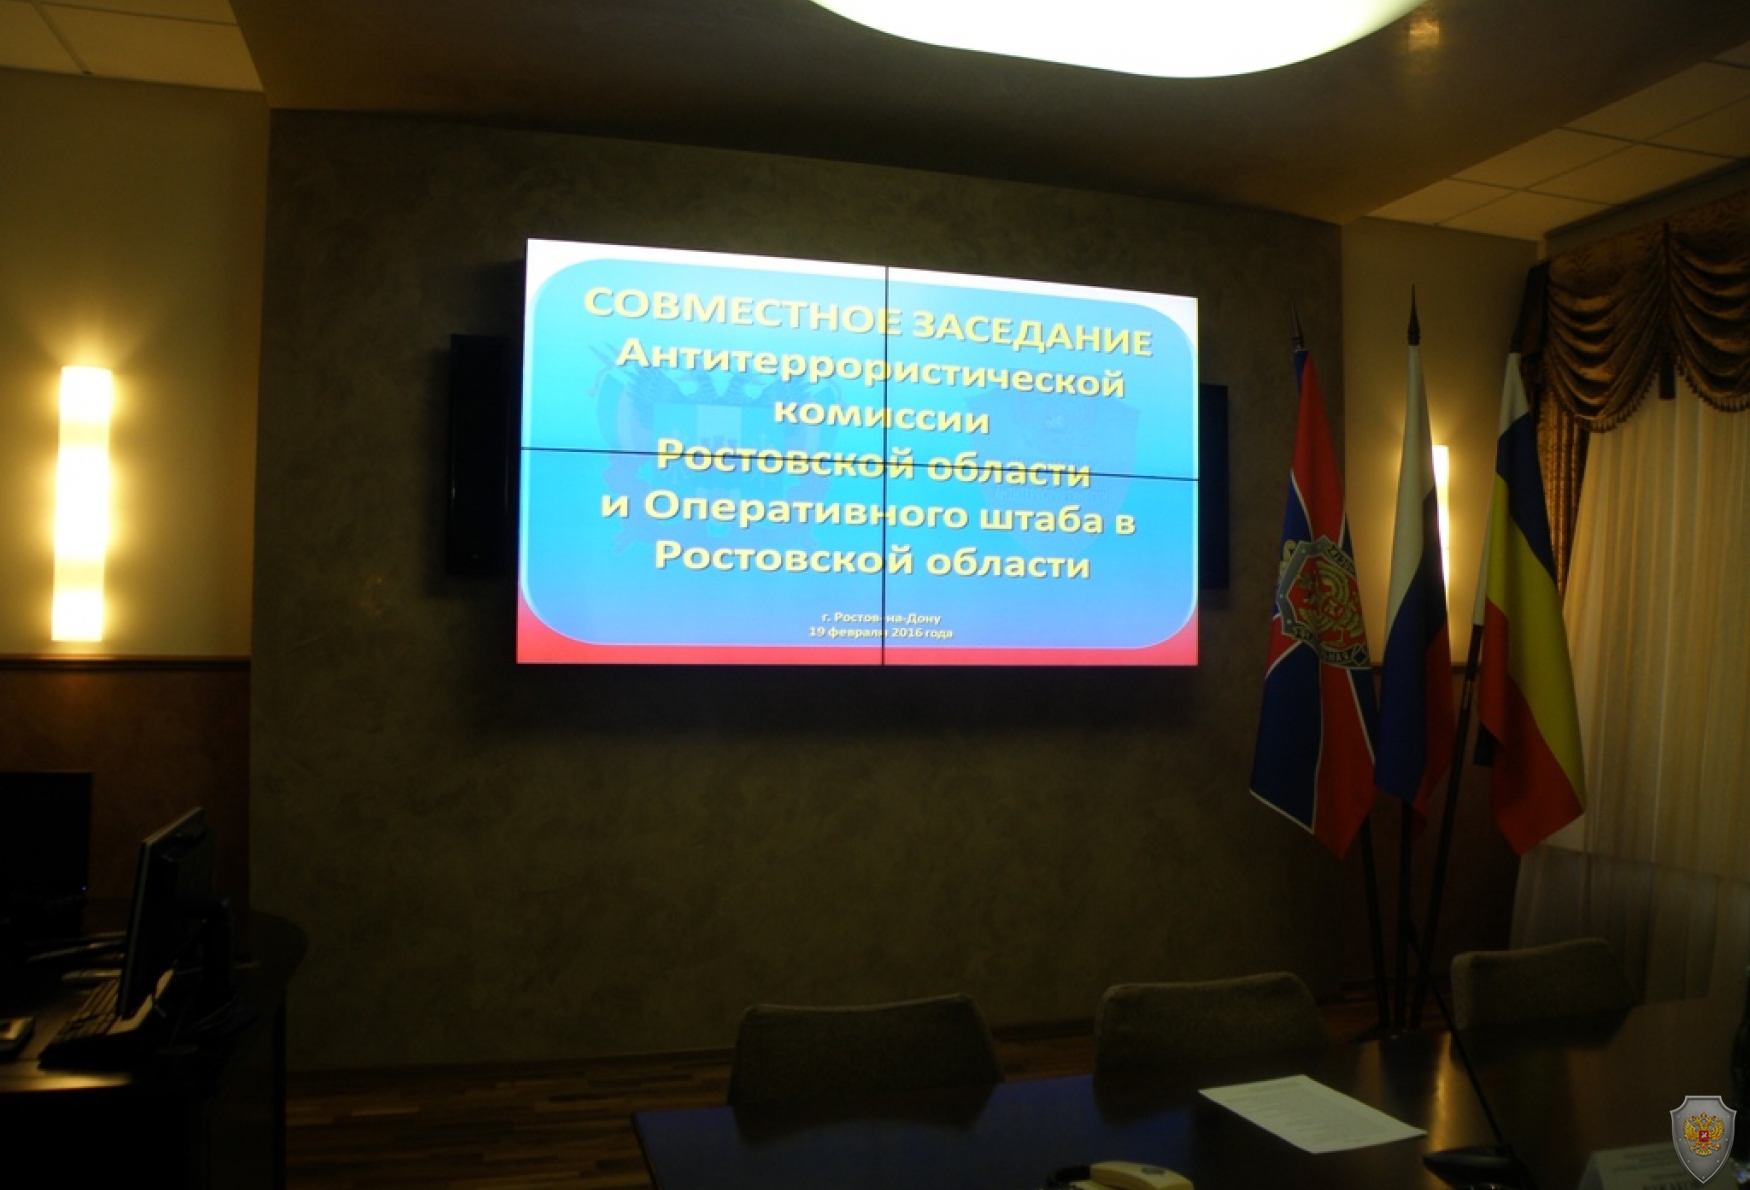 Внеочередное совместное заседание оперативного штаба в Ростовской области и антитеррористической комиссии в Ростовской области